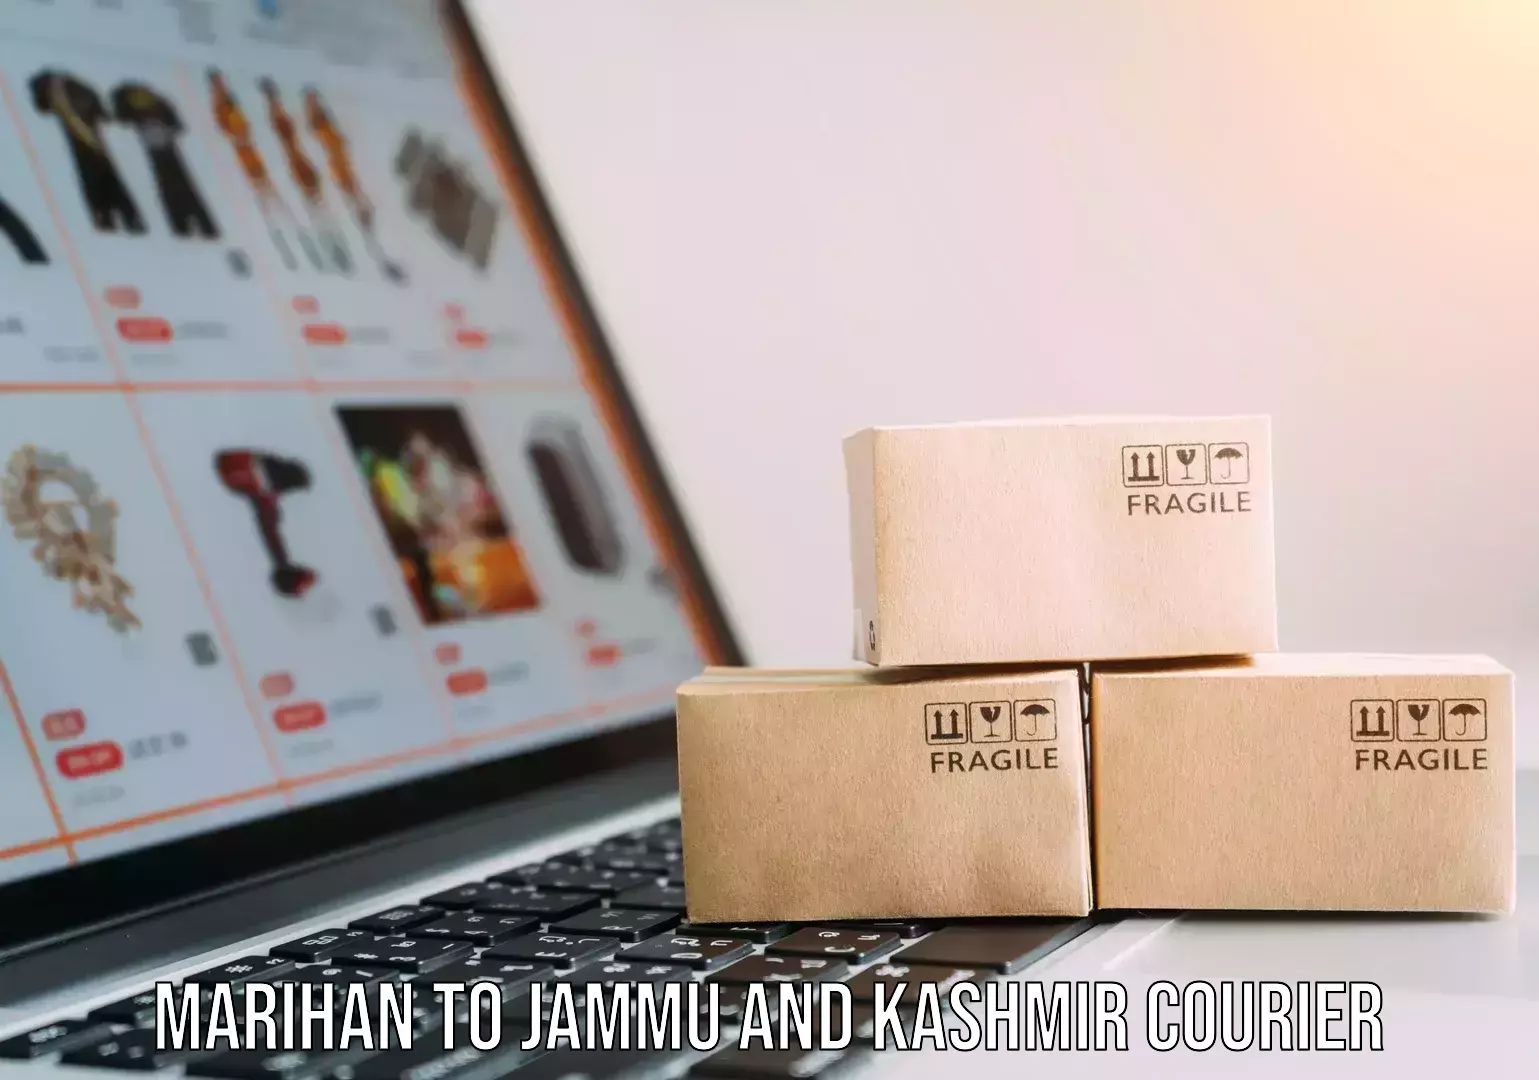 Expert goods movers Marihan to Jammu and Kashmir